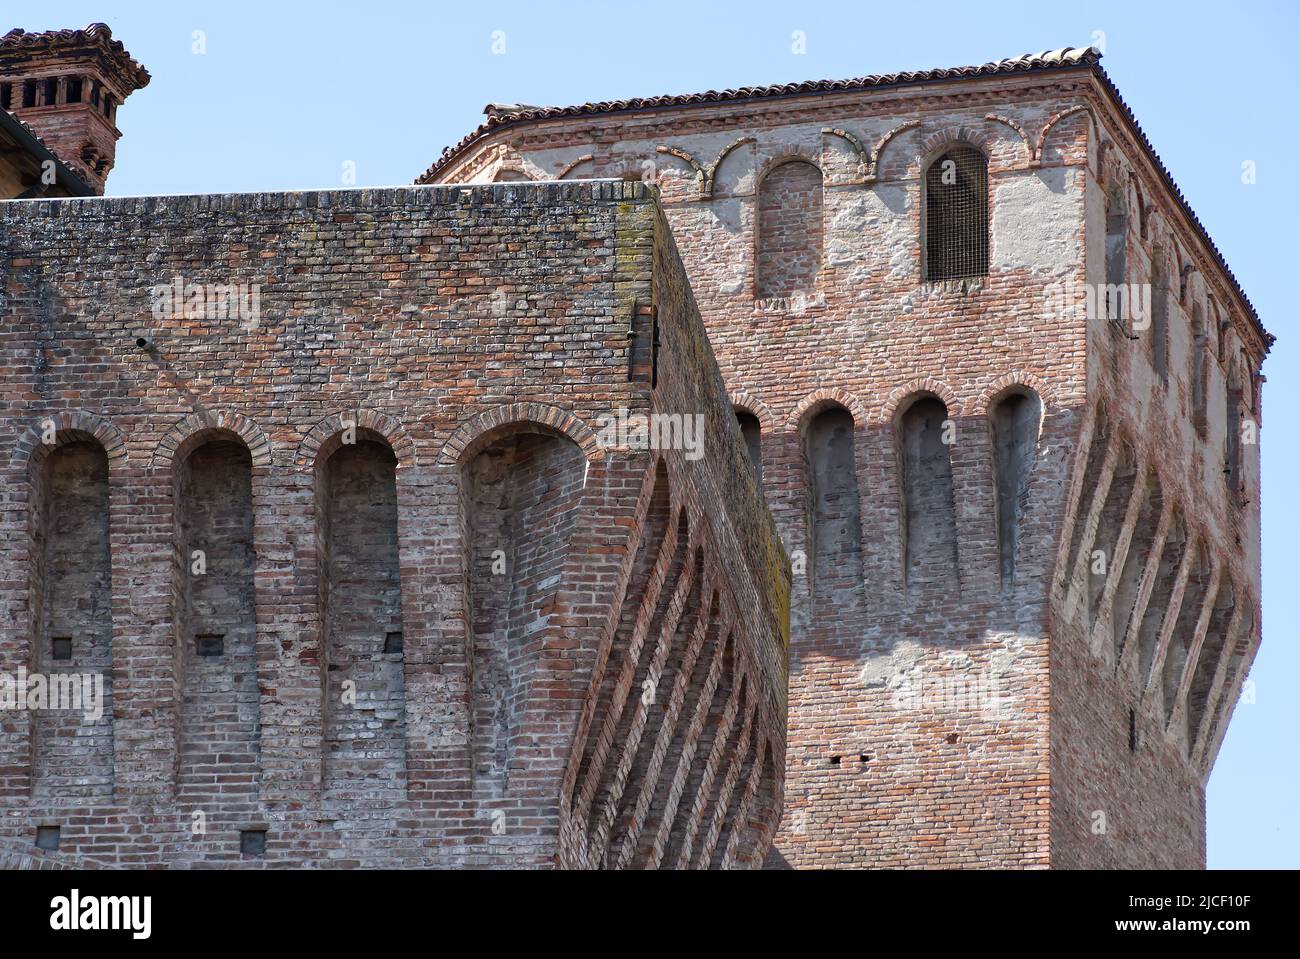 Ancient medieval Castle of Vignola (La Rocca di Vignola). Modena, Italy. Stock Photo